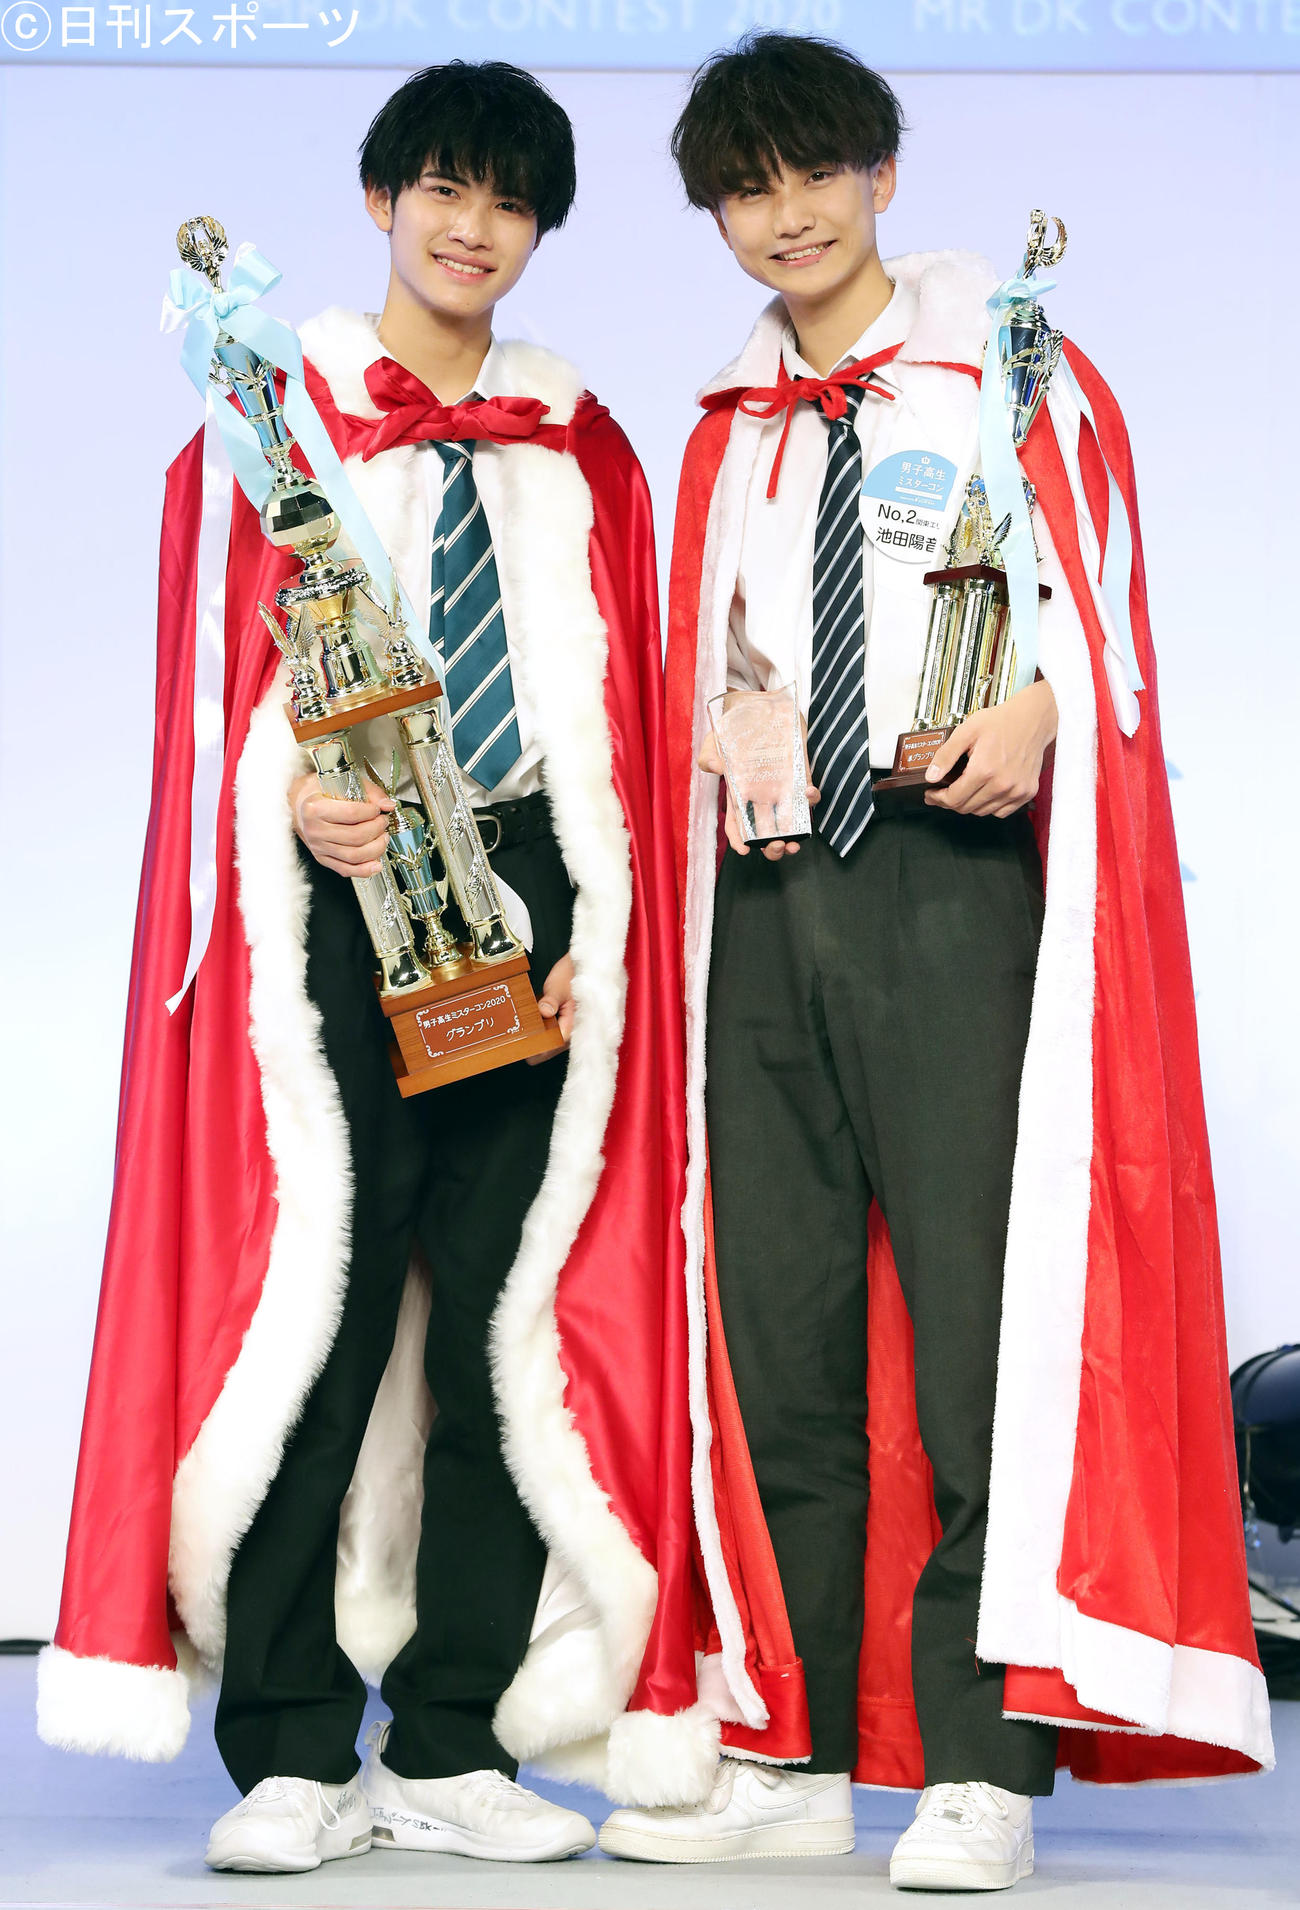 男子高生ミスターコン2020でグランプリに輝いた高校2年生の中野晴仁さん（左）と準グランプリの高校2年生池田陽音さんは笑顔で記念撮影する（撮影・浅見桂子）